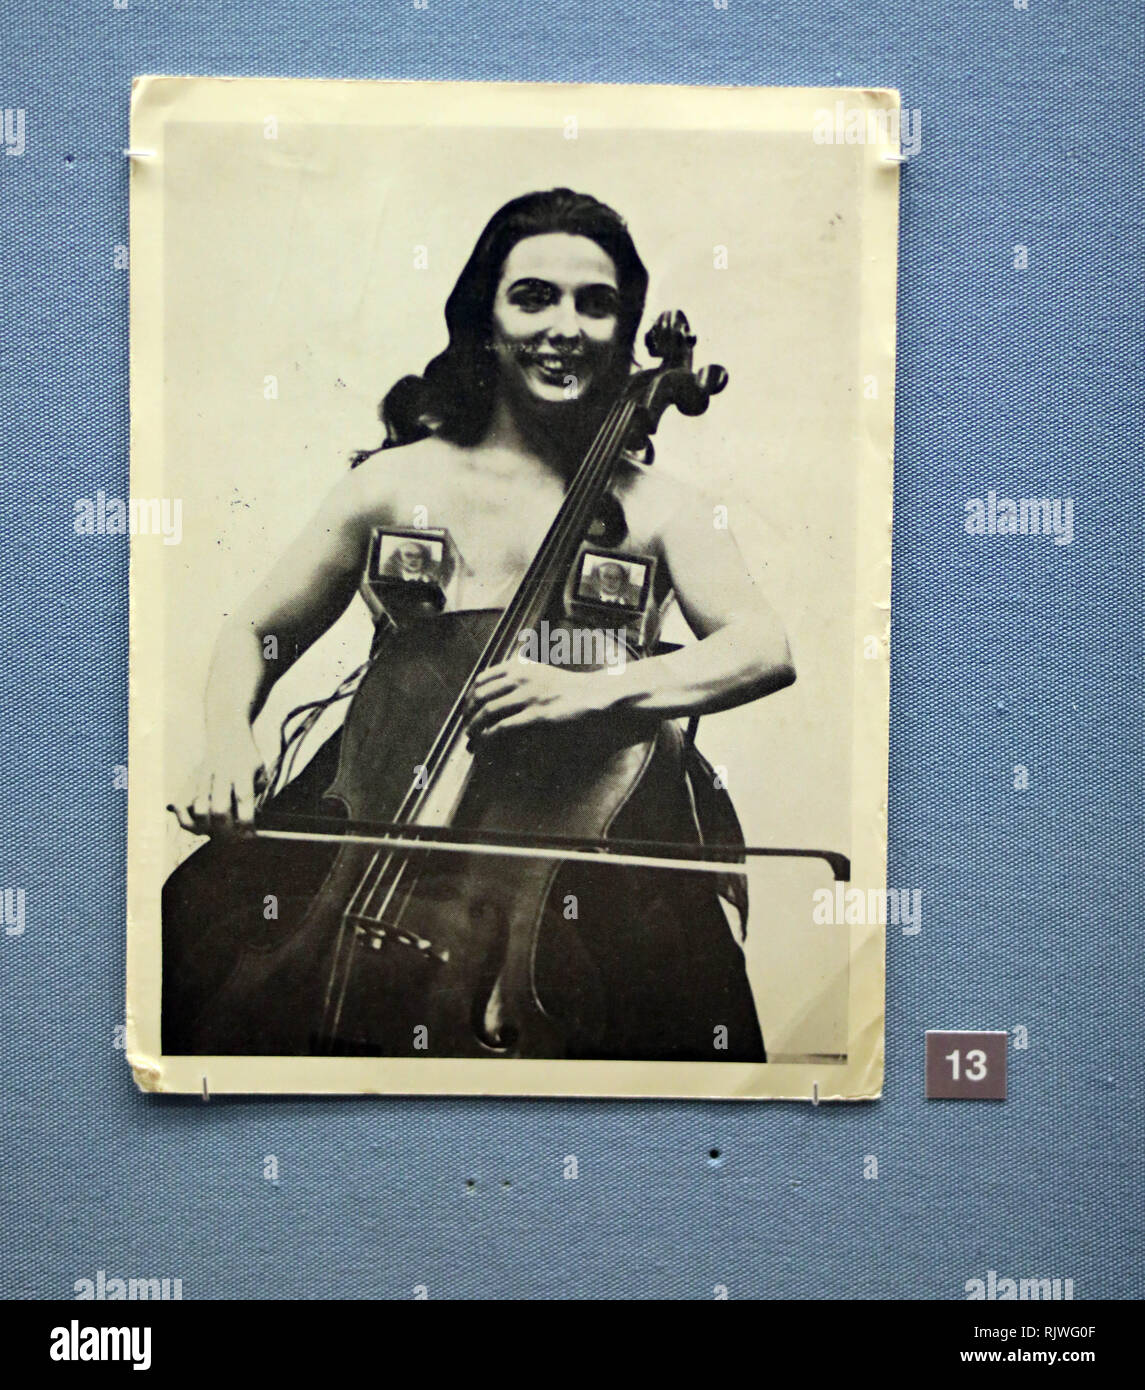 Bild zeigt: politische und feministische Postkarten Funktion stark British Museum - Ausstellung der Postkarte Kunstwerke mit Andy Warhol, Jeremy Deller, Stockfoto